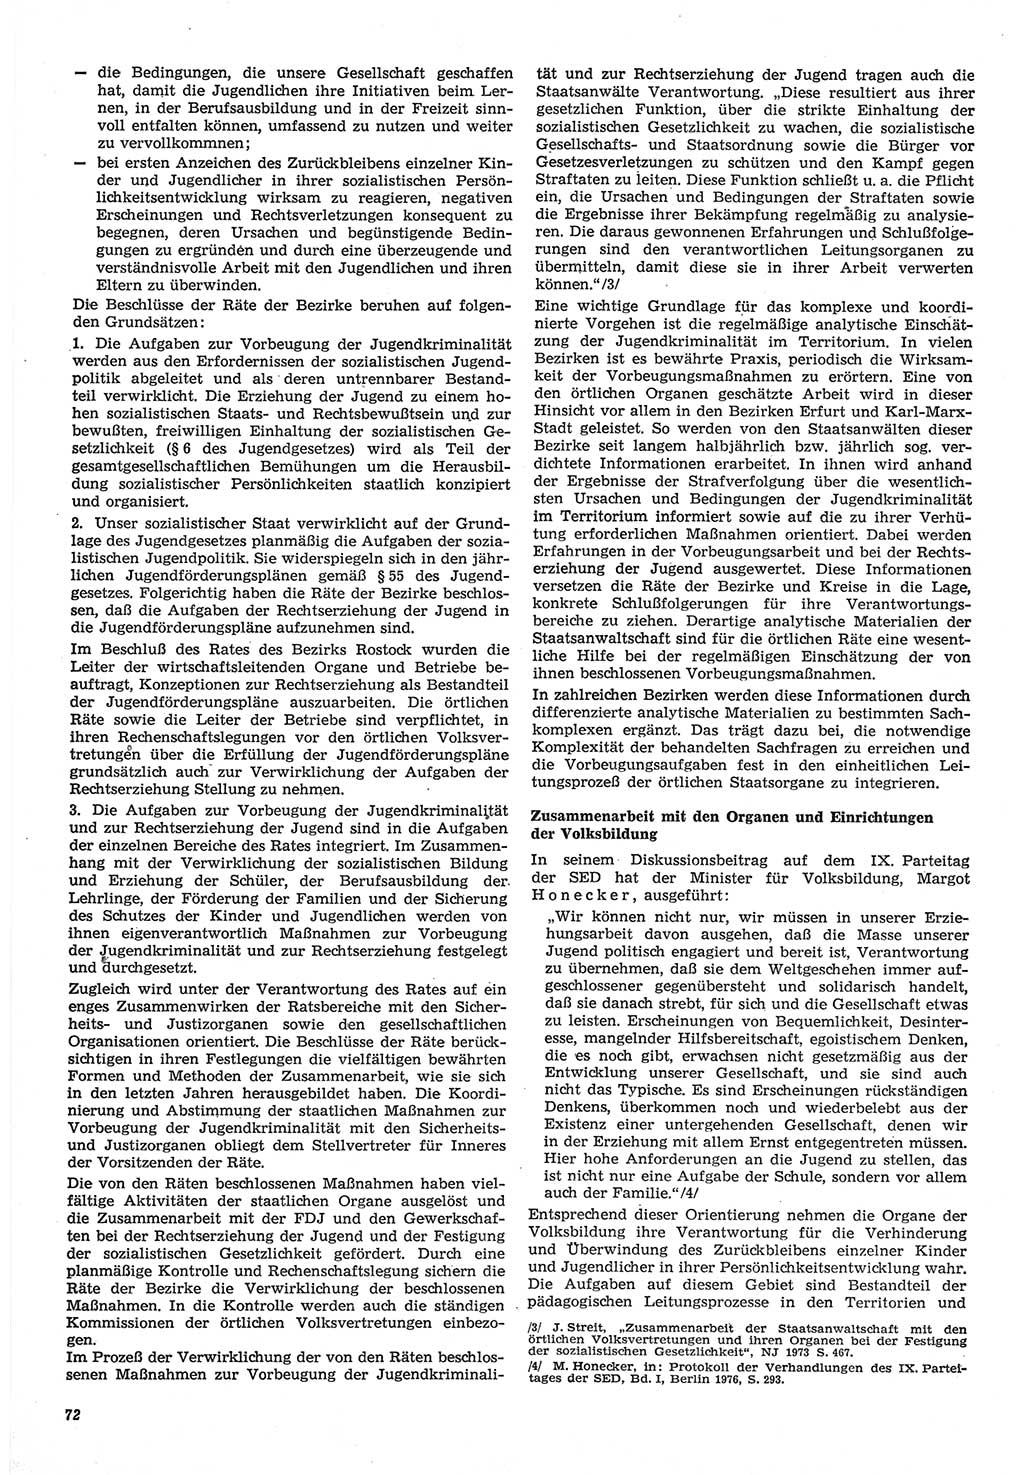 Neue Justiz (NJ), Zeitschrift für Recht und Rechtswissenschaft-Zeitschrift, sozialistisches Recht und Gesetzlichkeit, 31. Jahrgang 1977, Seite 72 (NJ DDR 1977, S. 72)